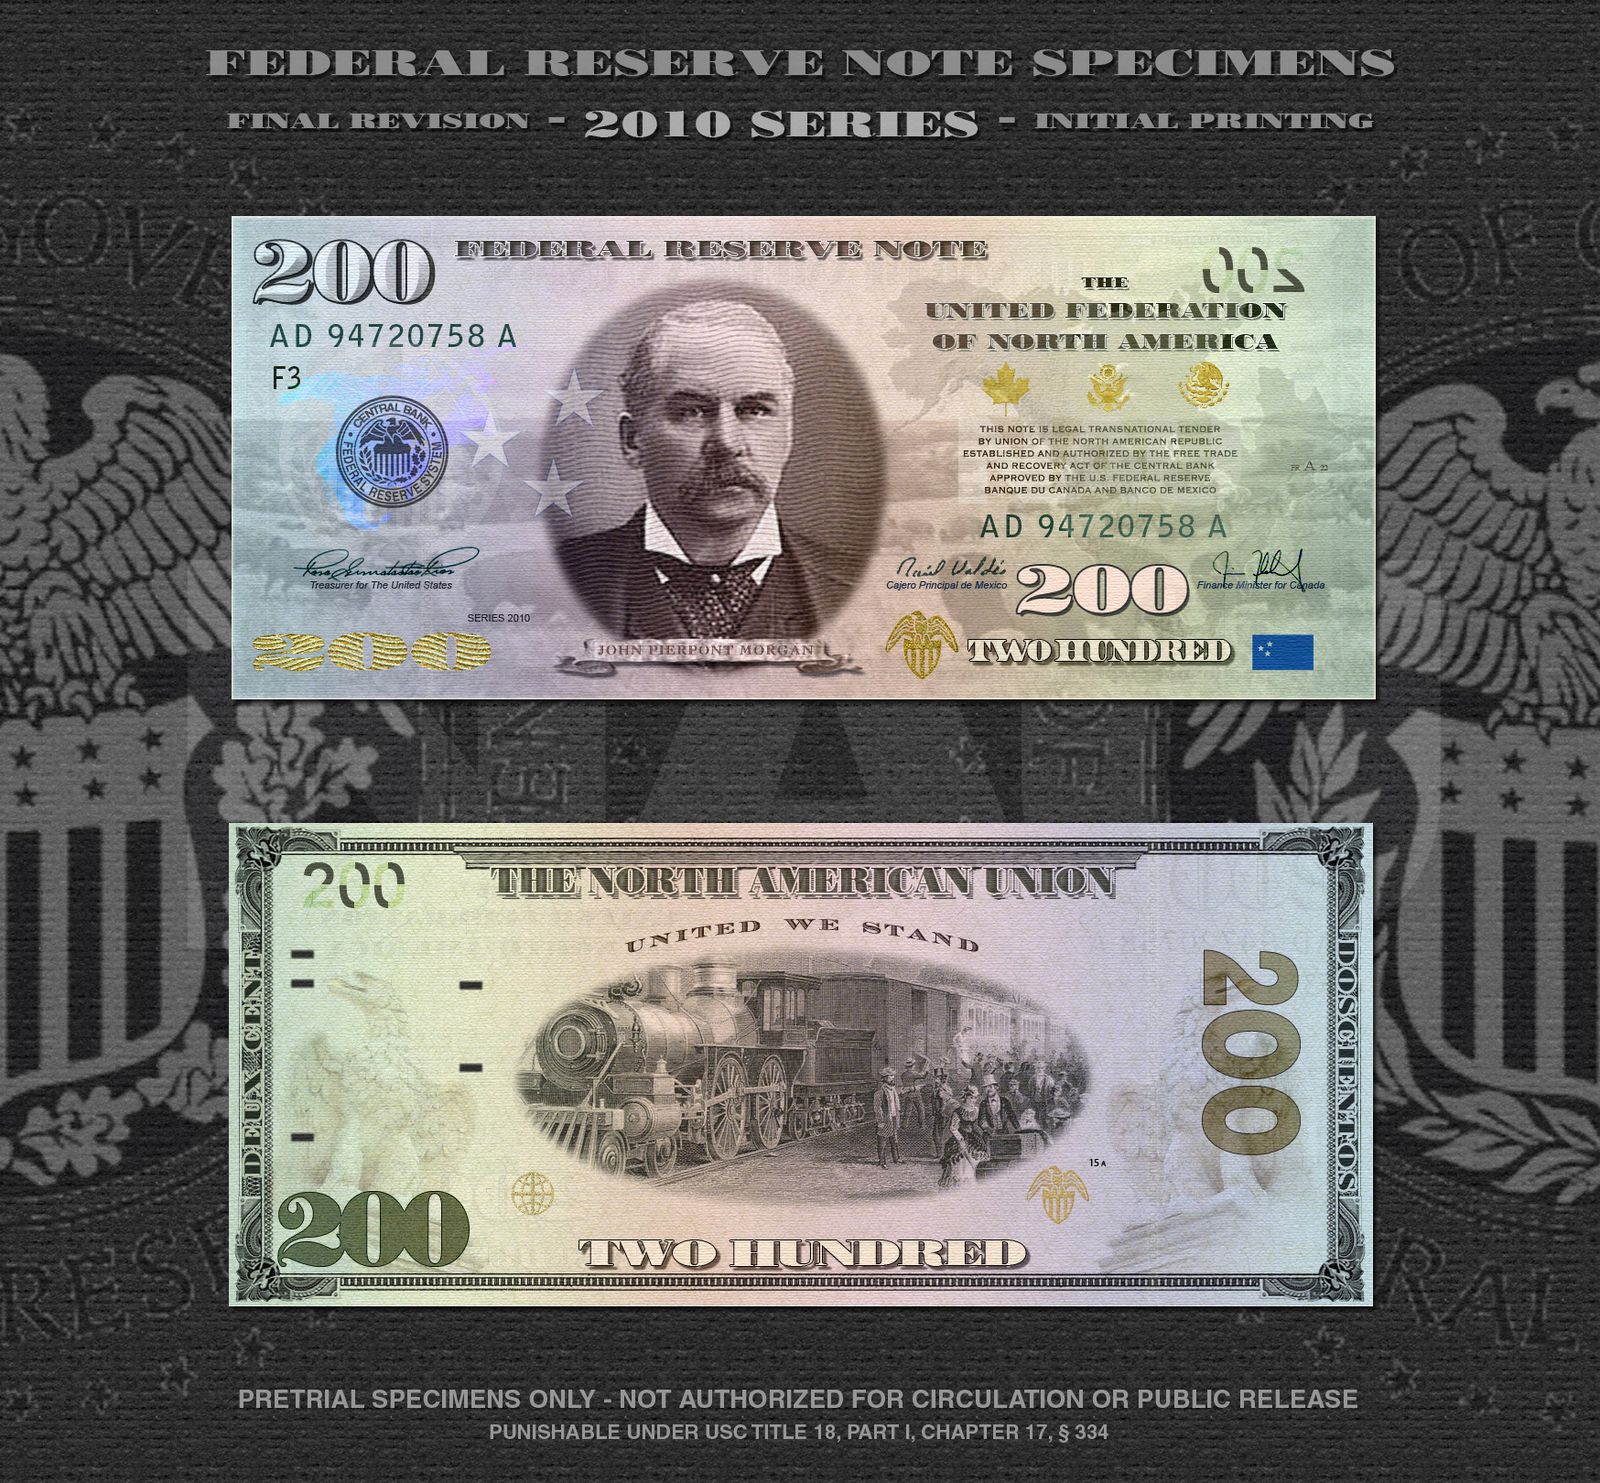 New currency. Новая американская валюта амеро. Новые доллары. Доллары США нового образца. Новые банкноты долларов США.